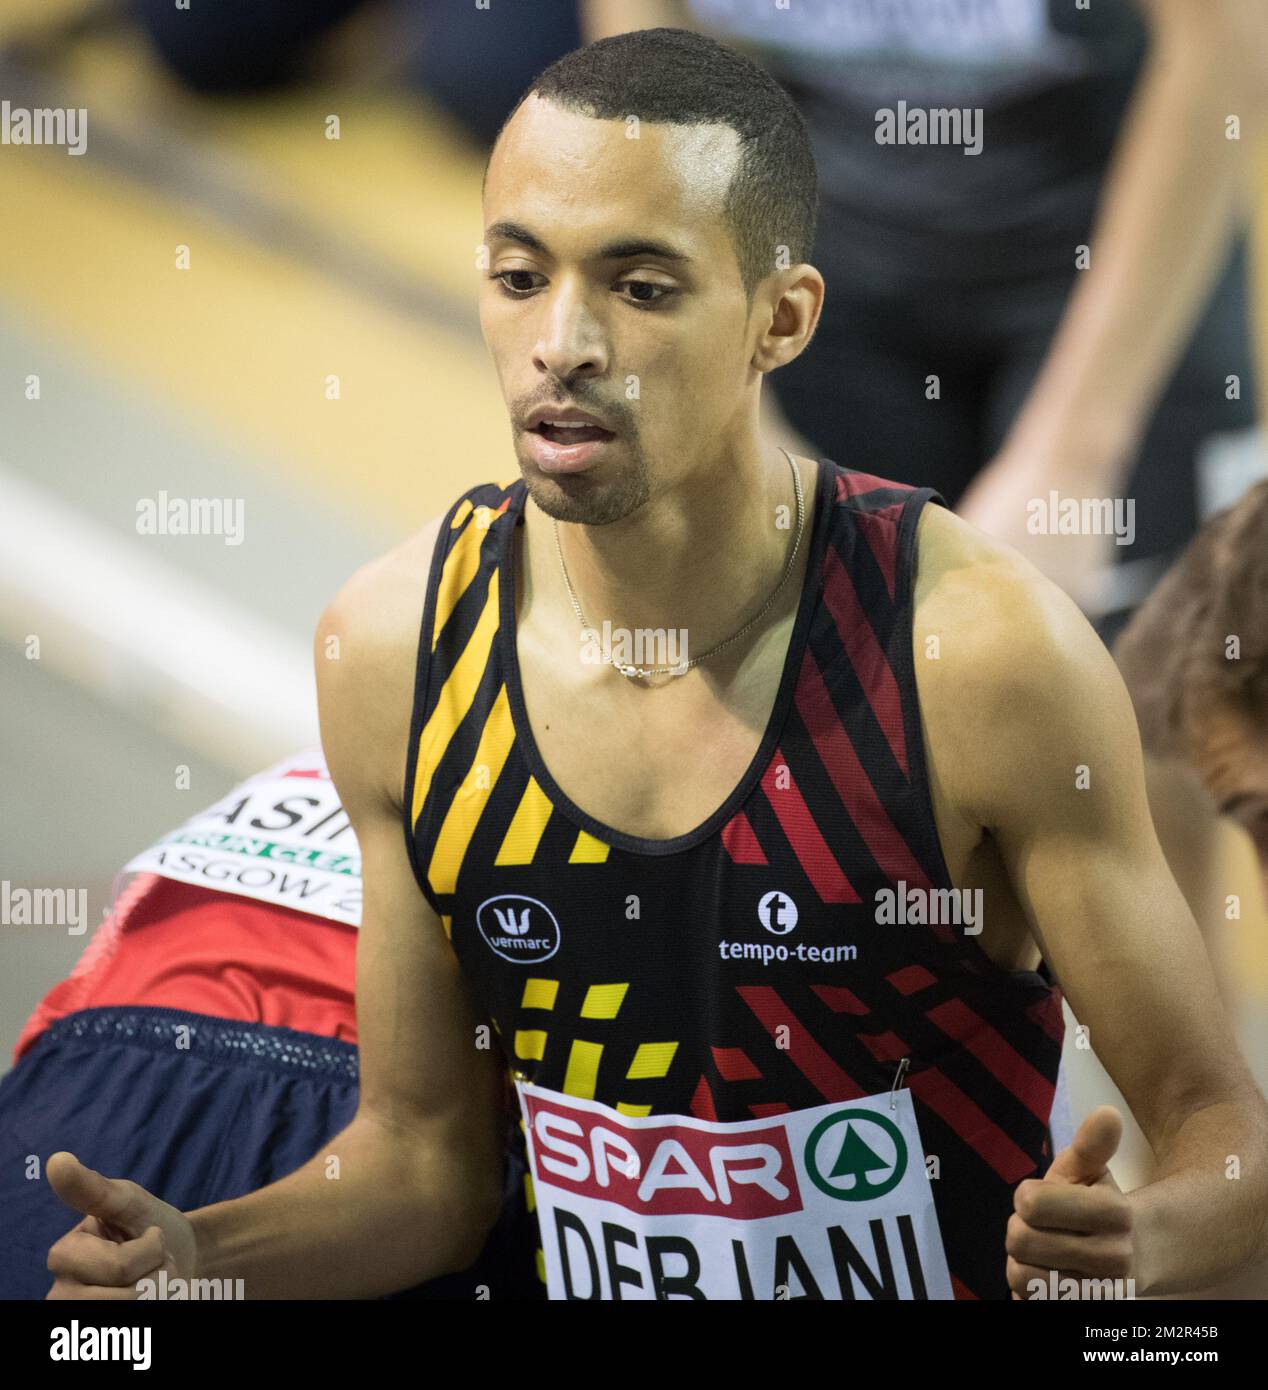 Der belgische Ismael Debjani wurde nach der ersten Runde des Männer-1500m-Wettbewerbs am ersten Tag der Europameisterschaft in der Leichtathletik in Glasgow, Schottland, am Freitag, den 01. März 2019, fotografiert. Die Meisterschaften finden vom 1. Bis 3. März statt. BELGA FOTO BENOIT DOPPPAGNE Stockfoto